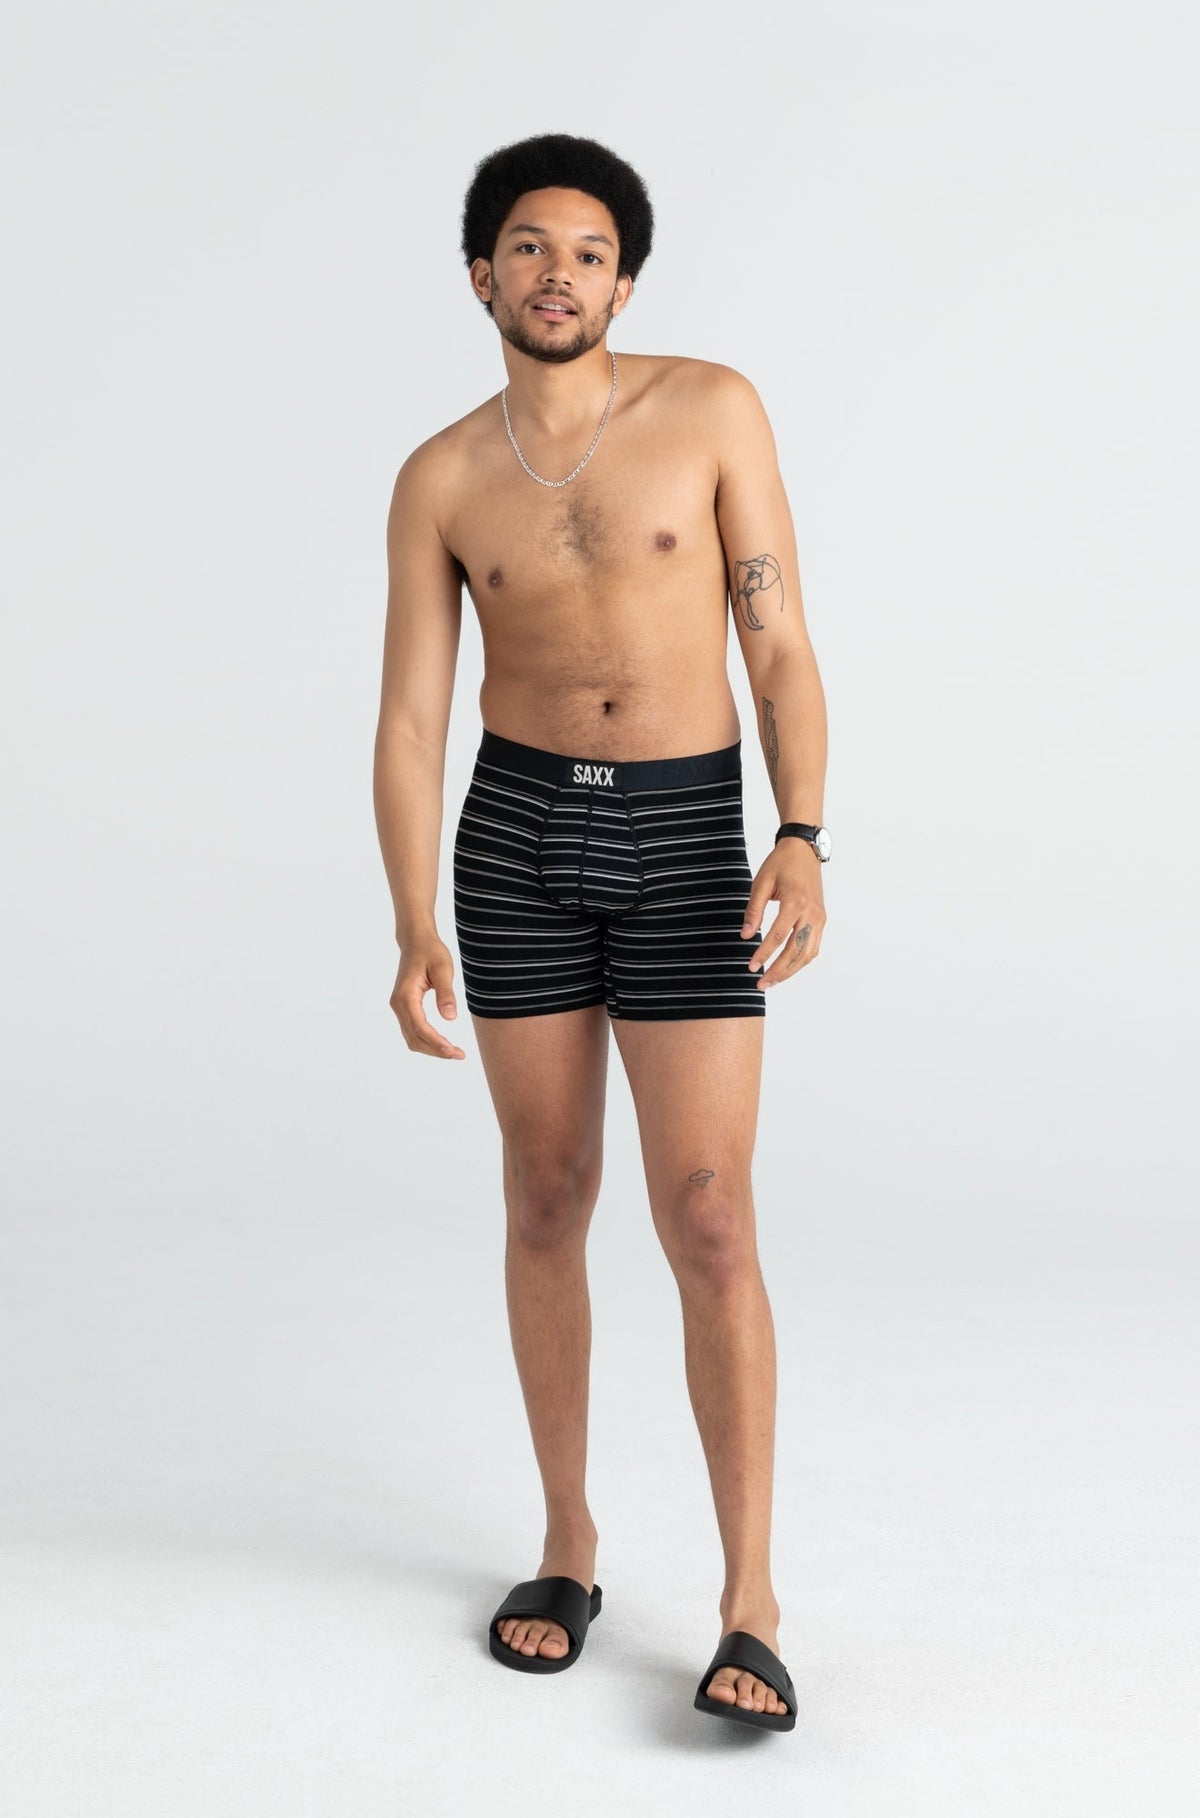 Sous-vêtement pour homme par Saxx | SXBM35 BCO | Boutique Vvög, vêtements mode pour hommes